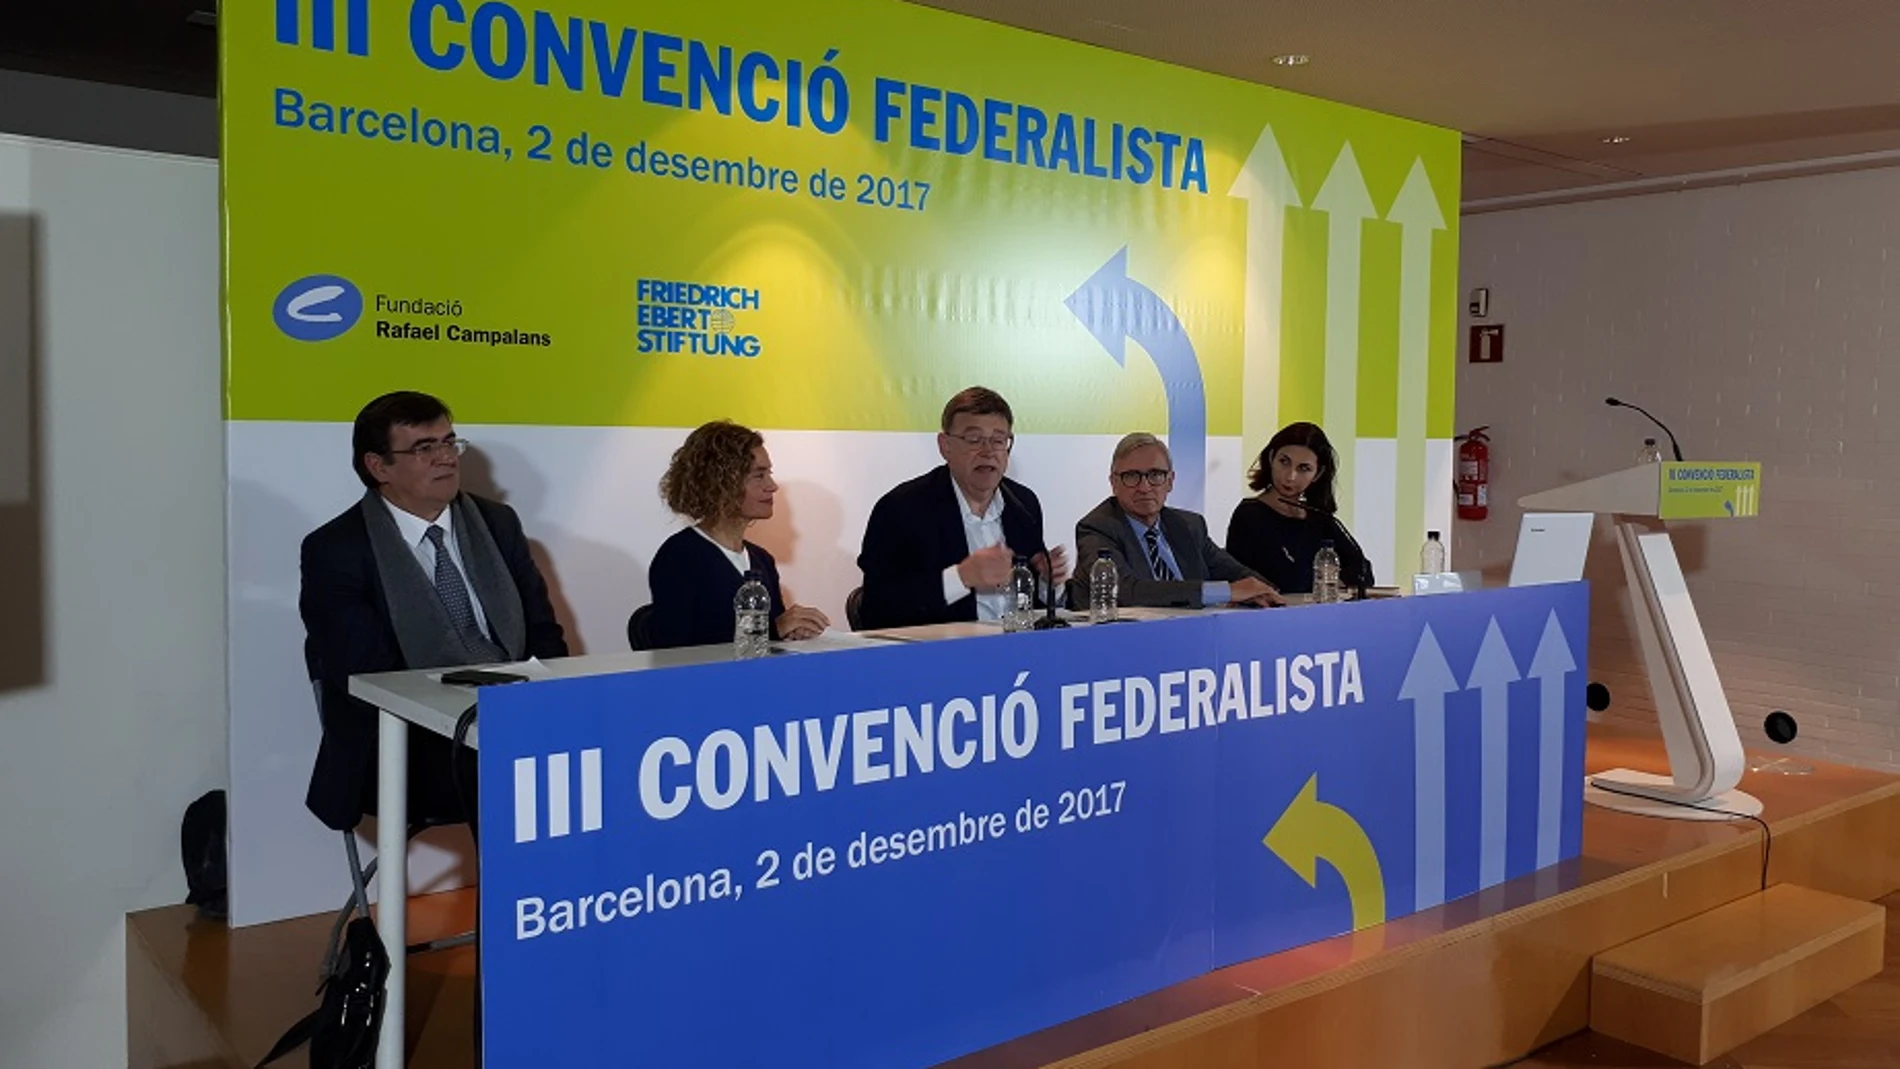 El presidente Puig participó ayer en la III Convención Federalista organizada por la Fundació Rafael Campalans